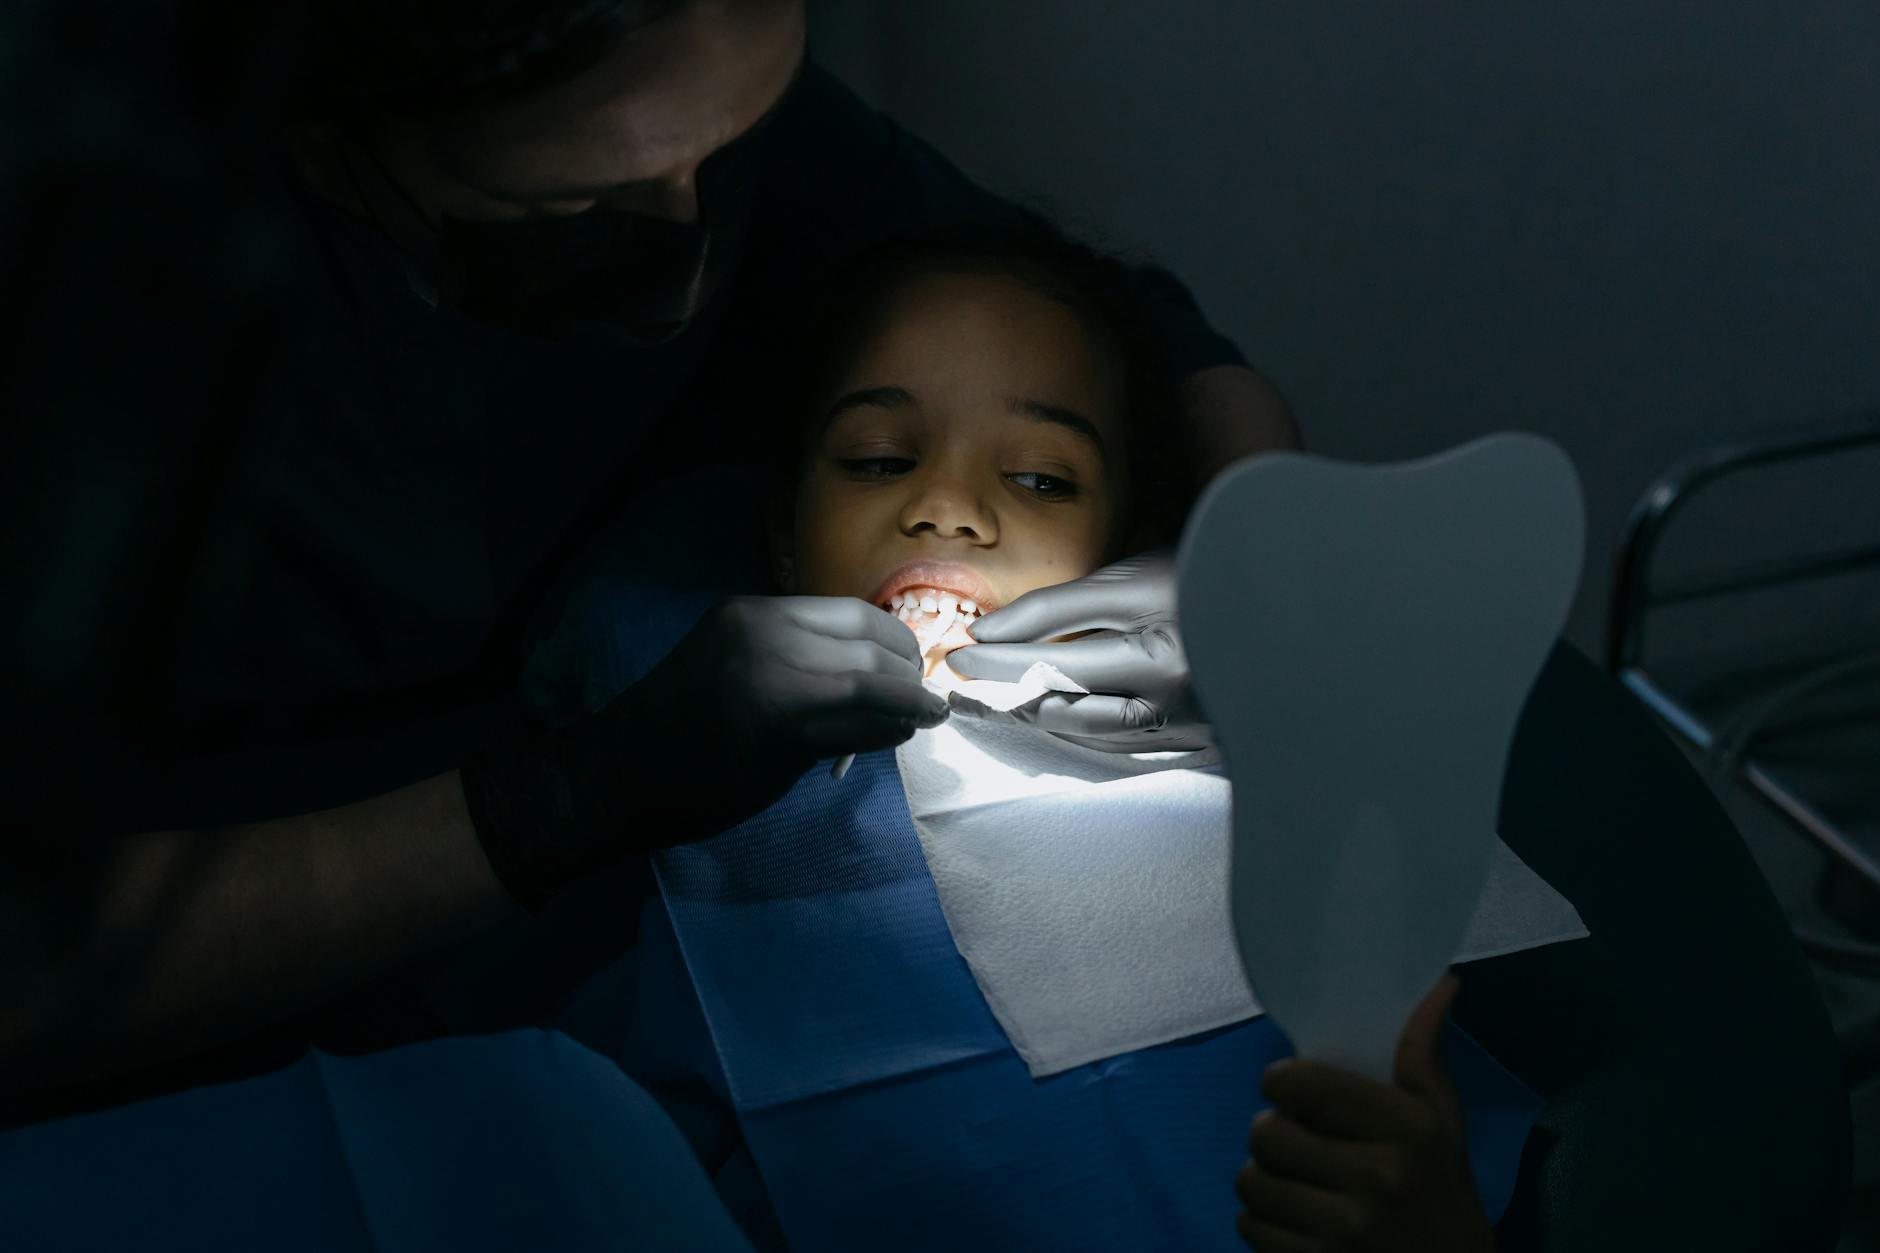 close up shot of a girl having dental checkup